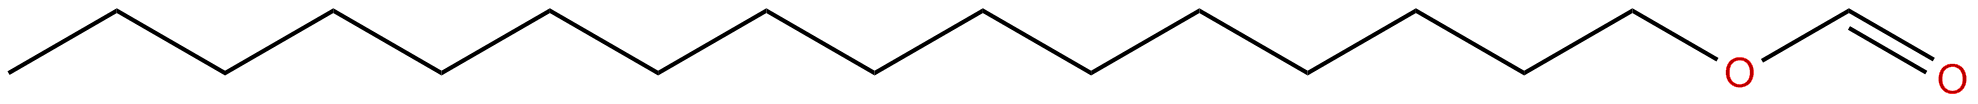 Image of hexadecyl methanoate